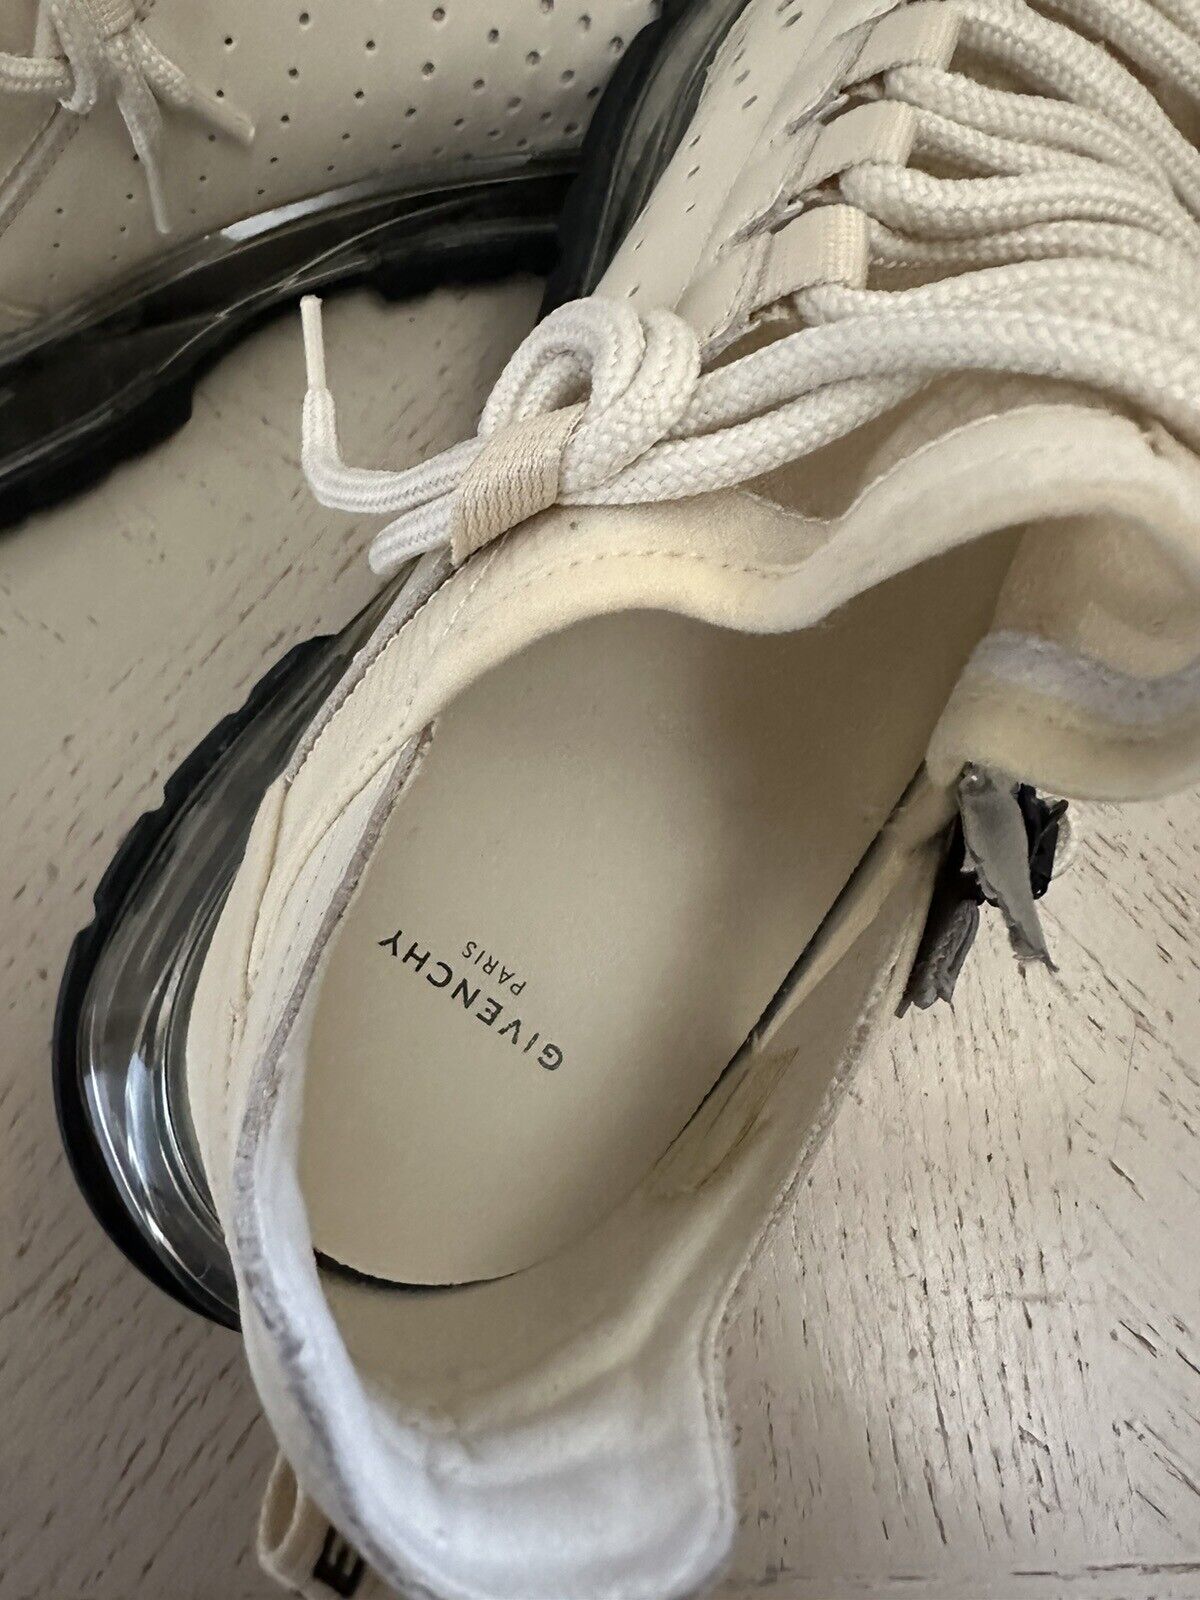 NIB Givenchy Damen Sneakers Schuhe Off White 10 US/40 Eu Italien